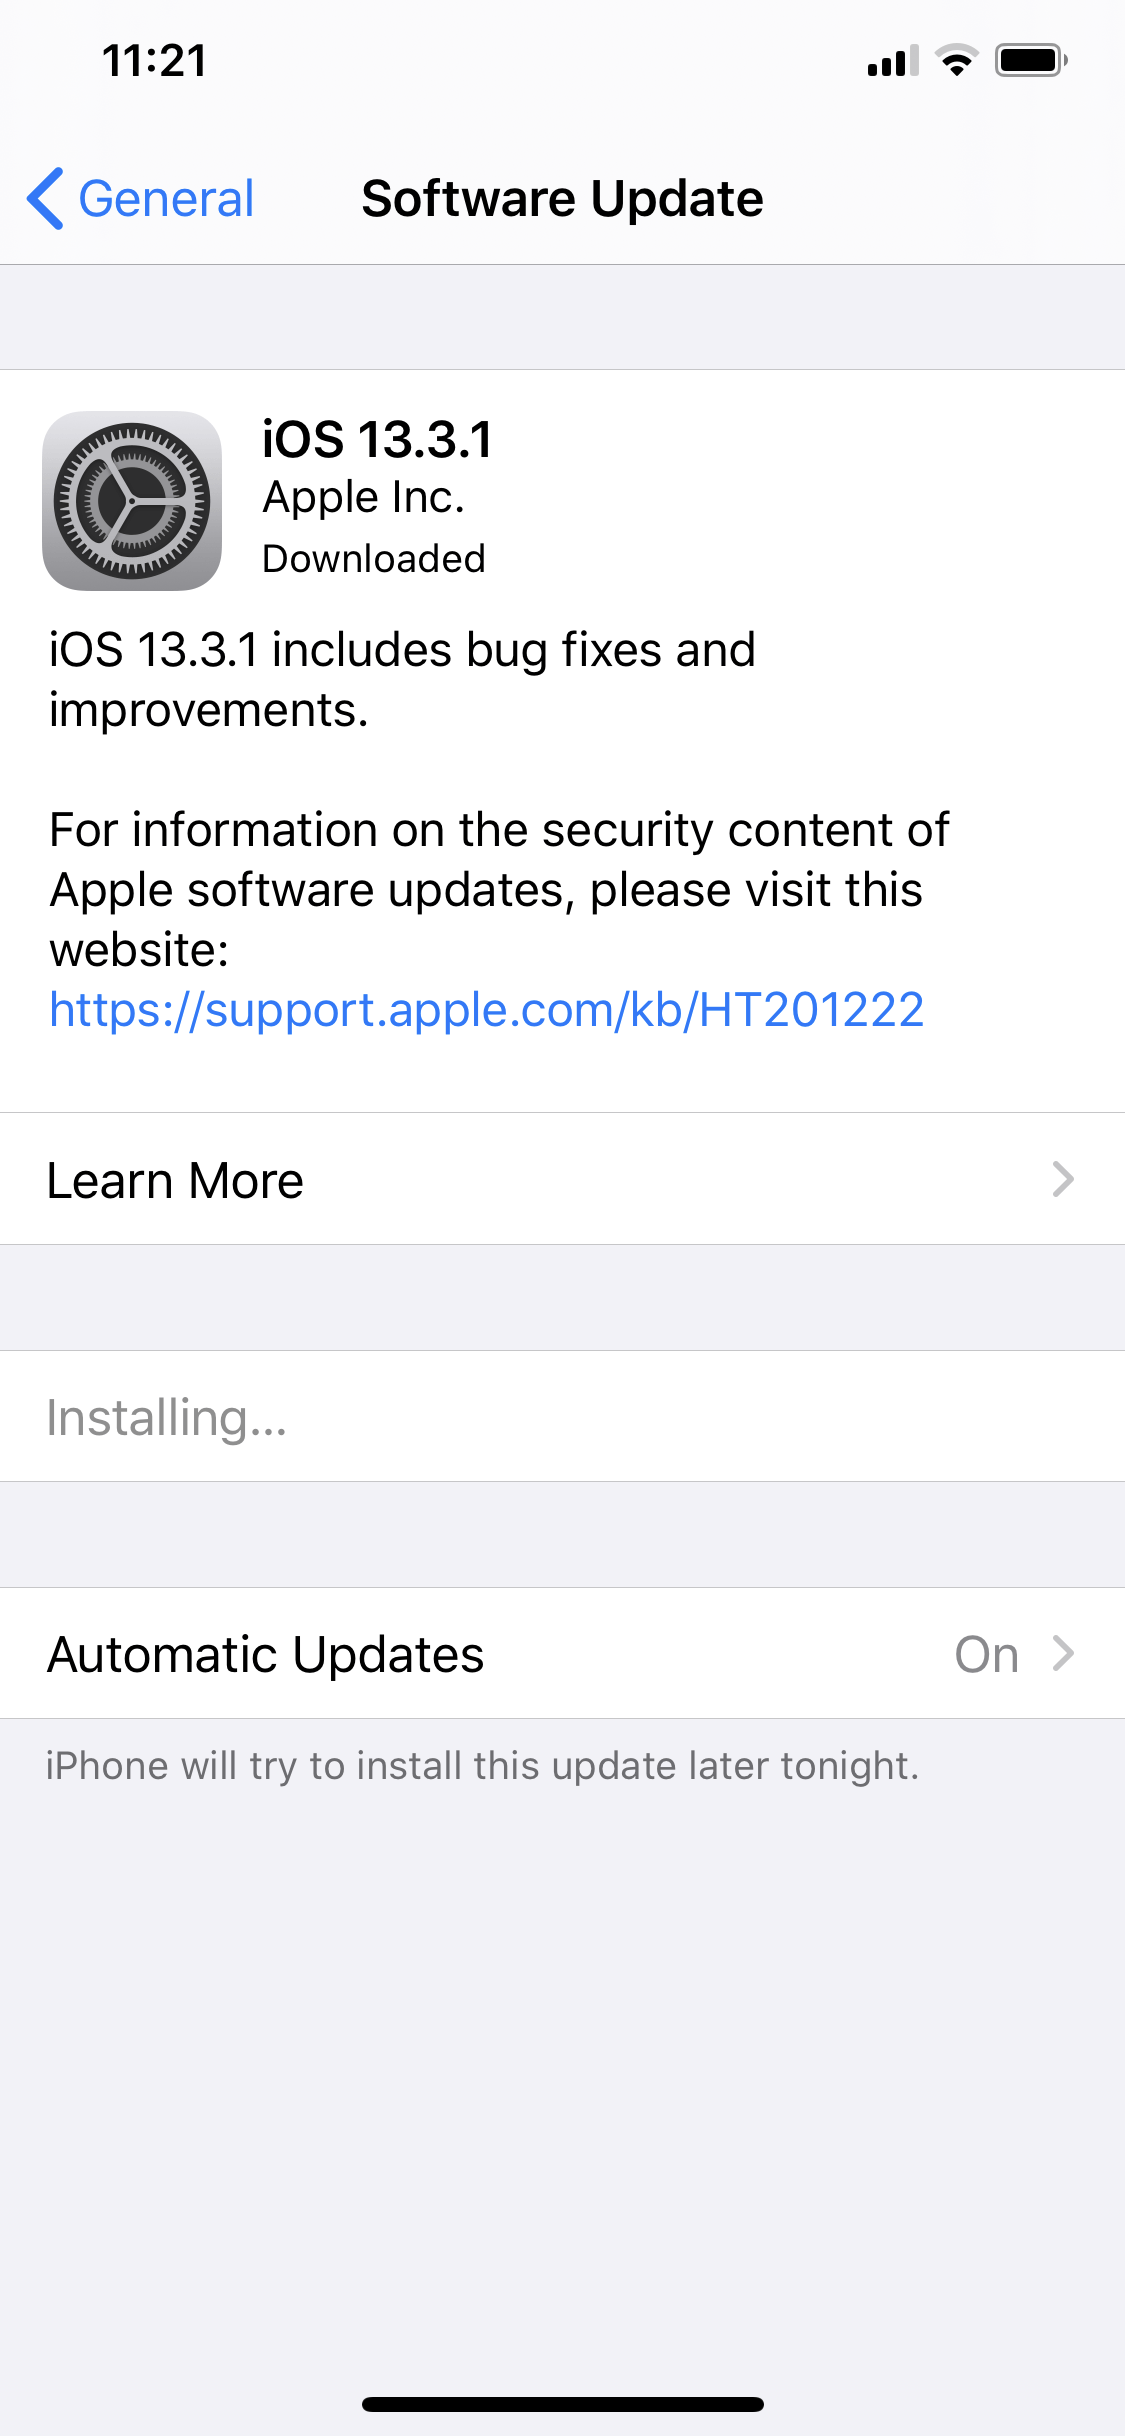 iOS 13.3.1 Update